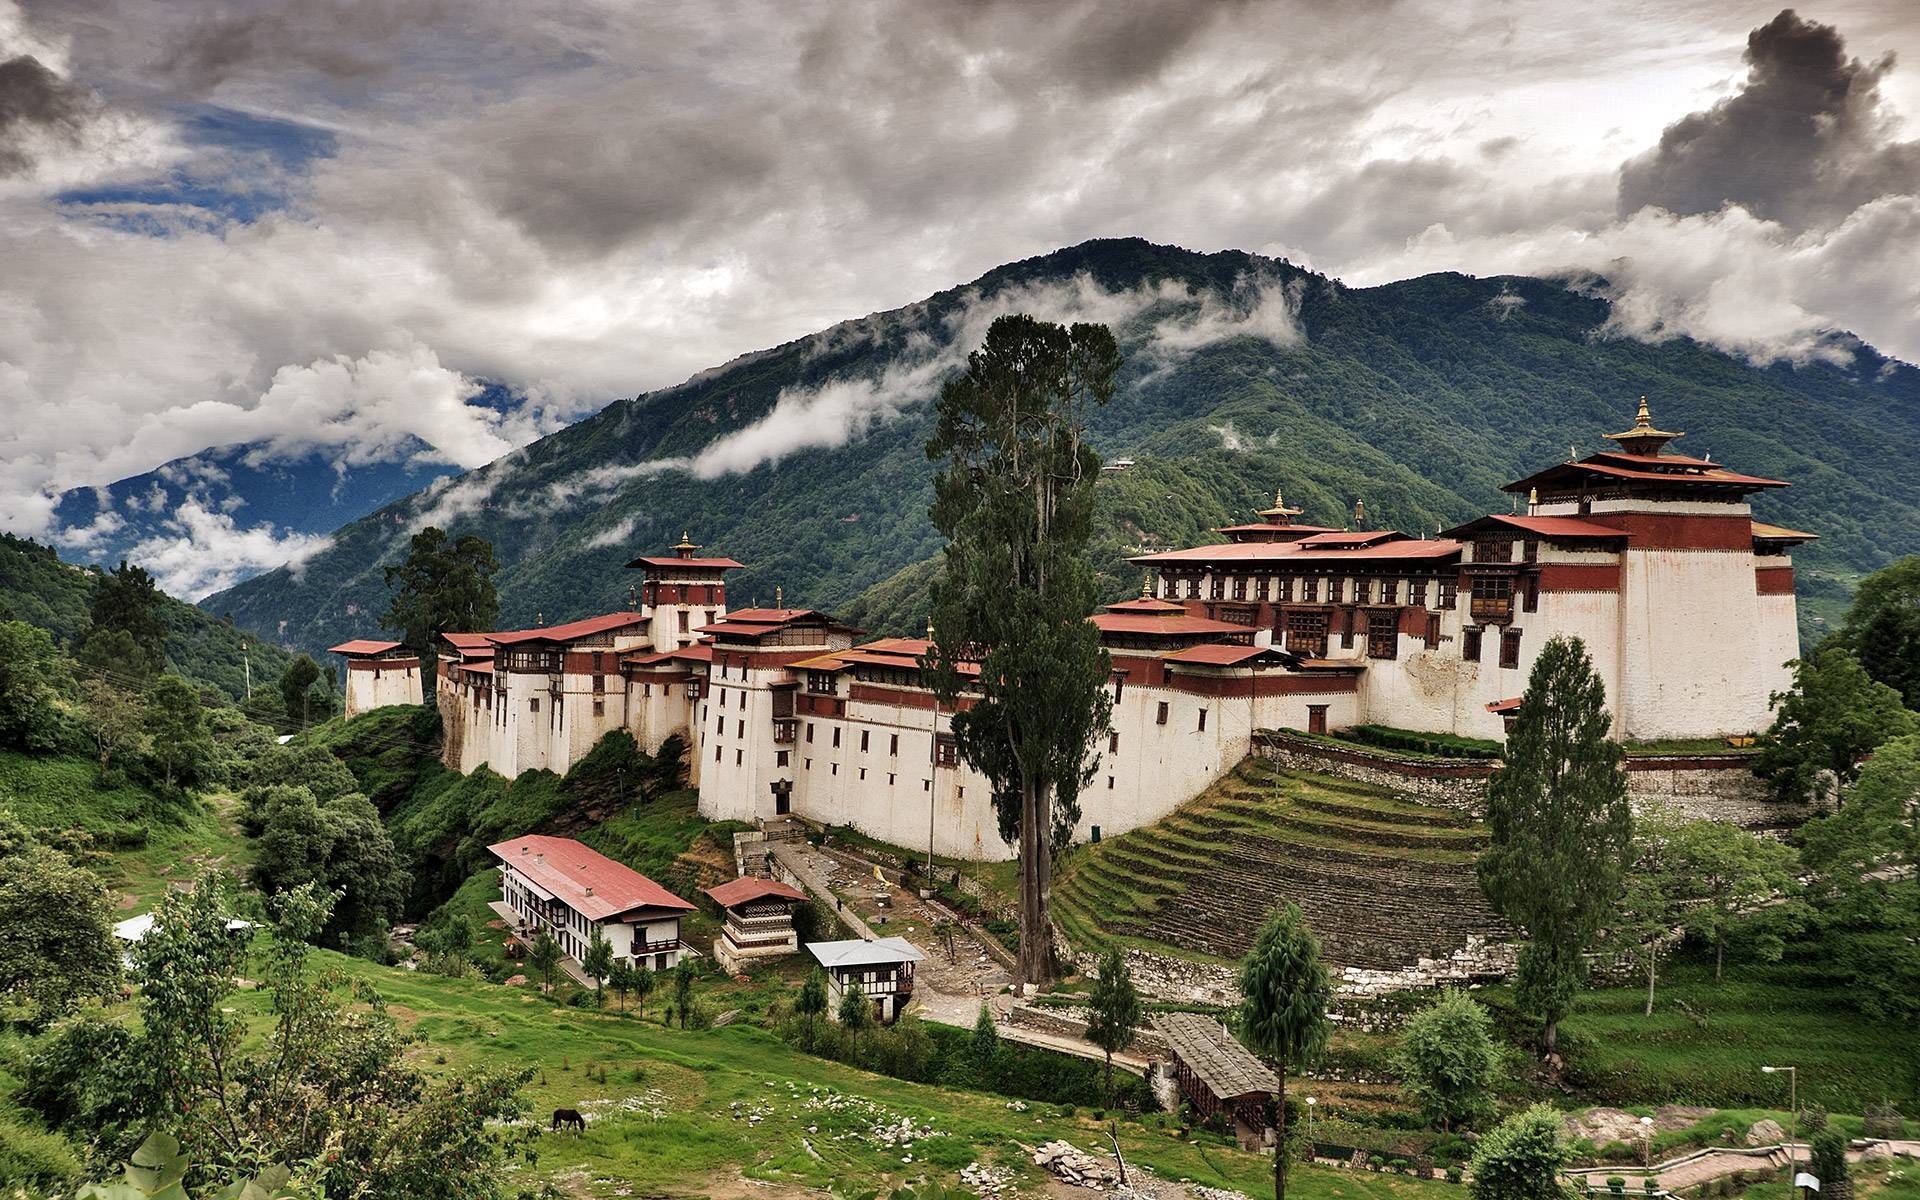 Bhutan travels, HD desktop, Stunning landscapes, Cultural richness, 1920x1200 HD Desktop